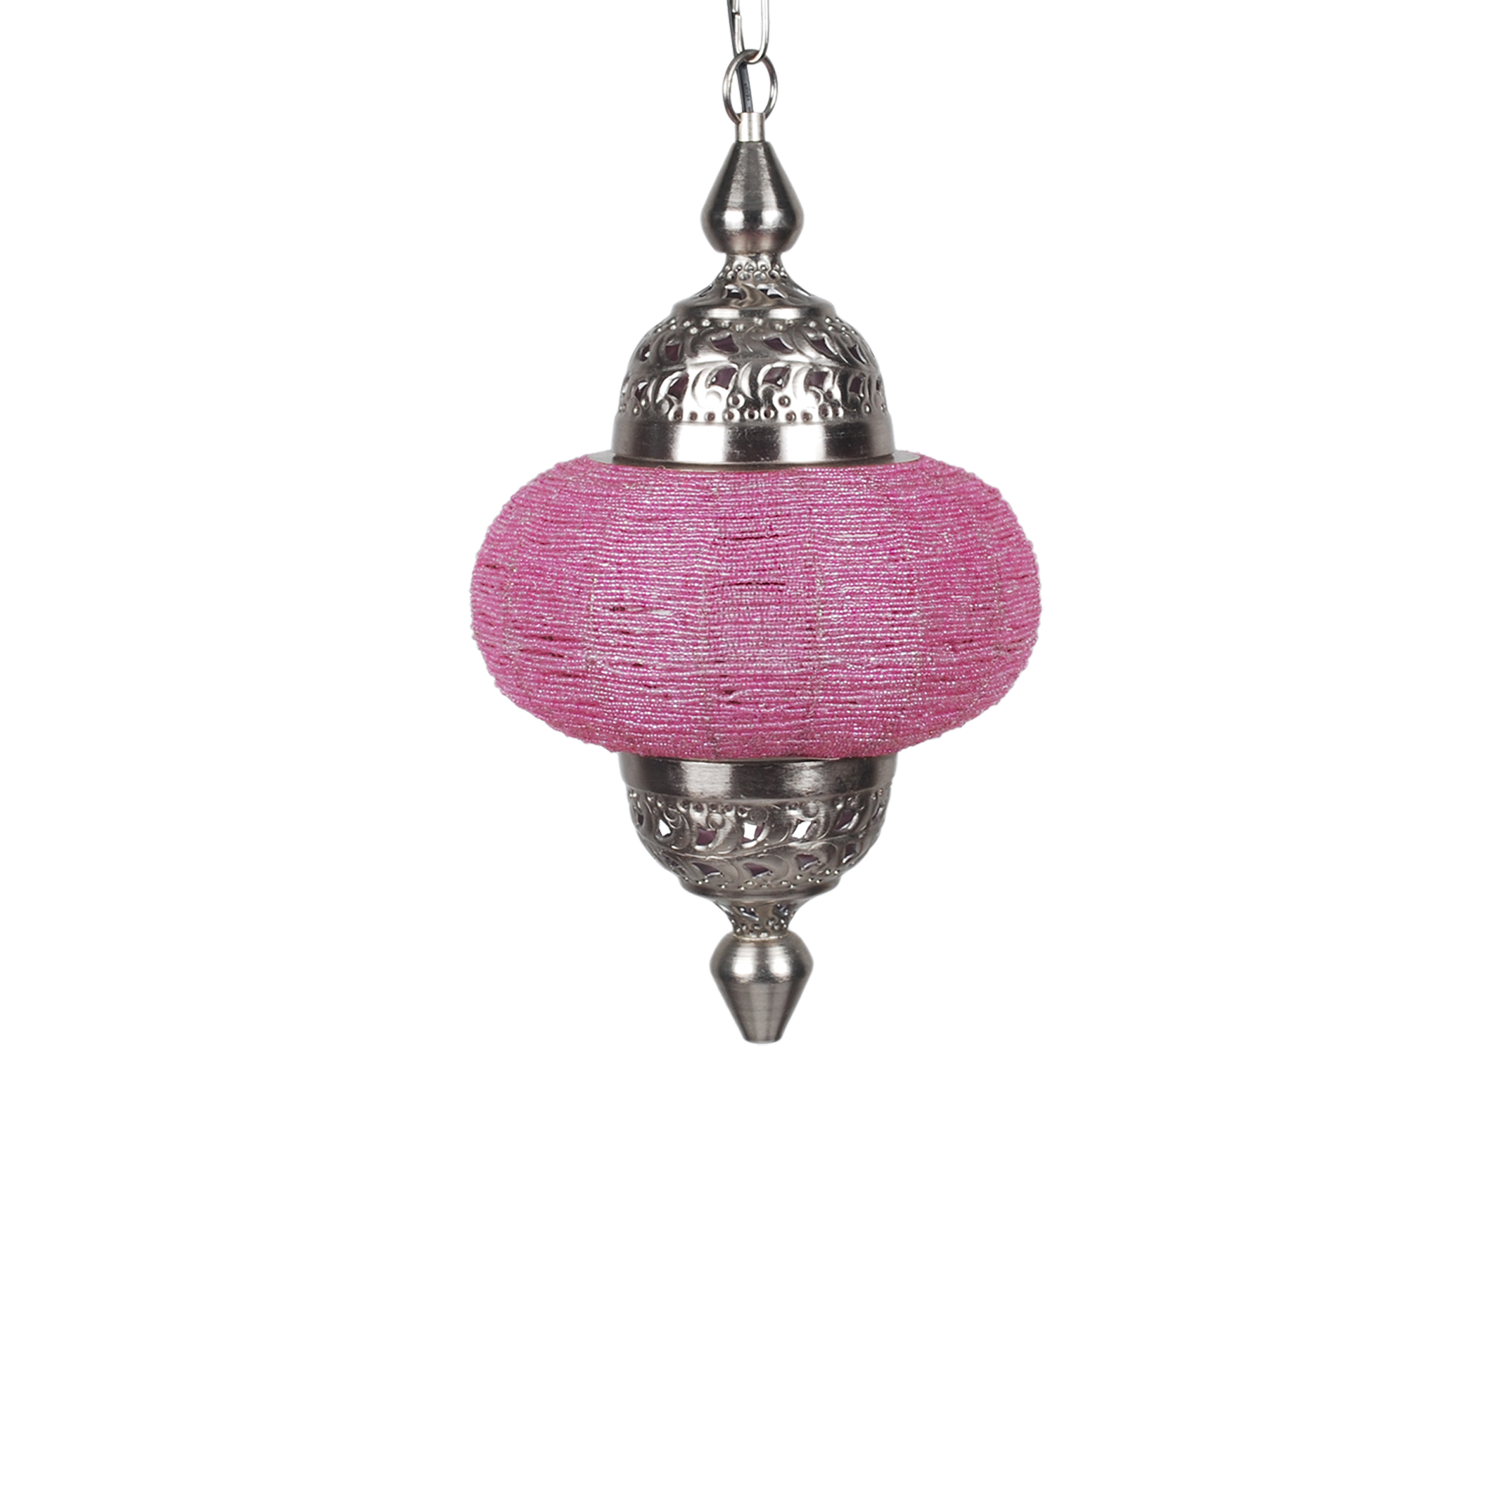 Hanglamp Arabesque klein roze